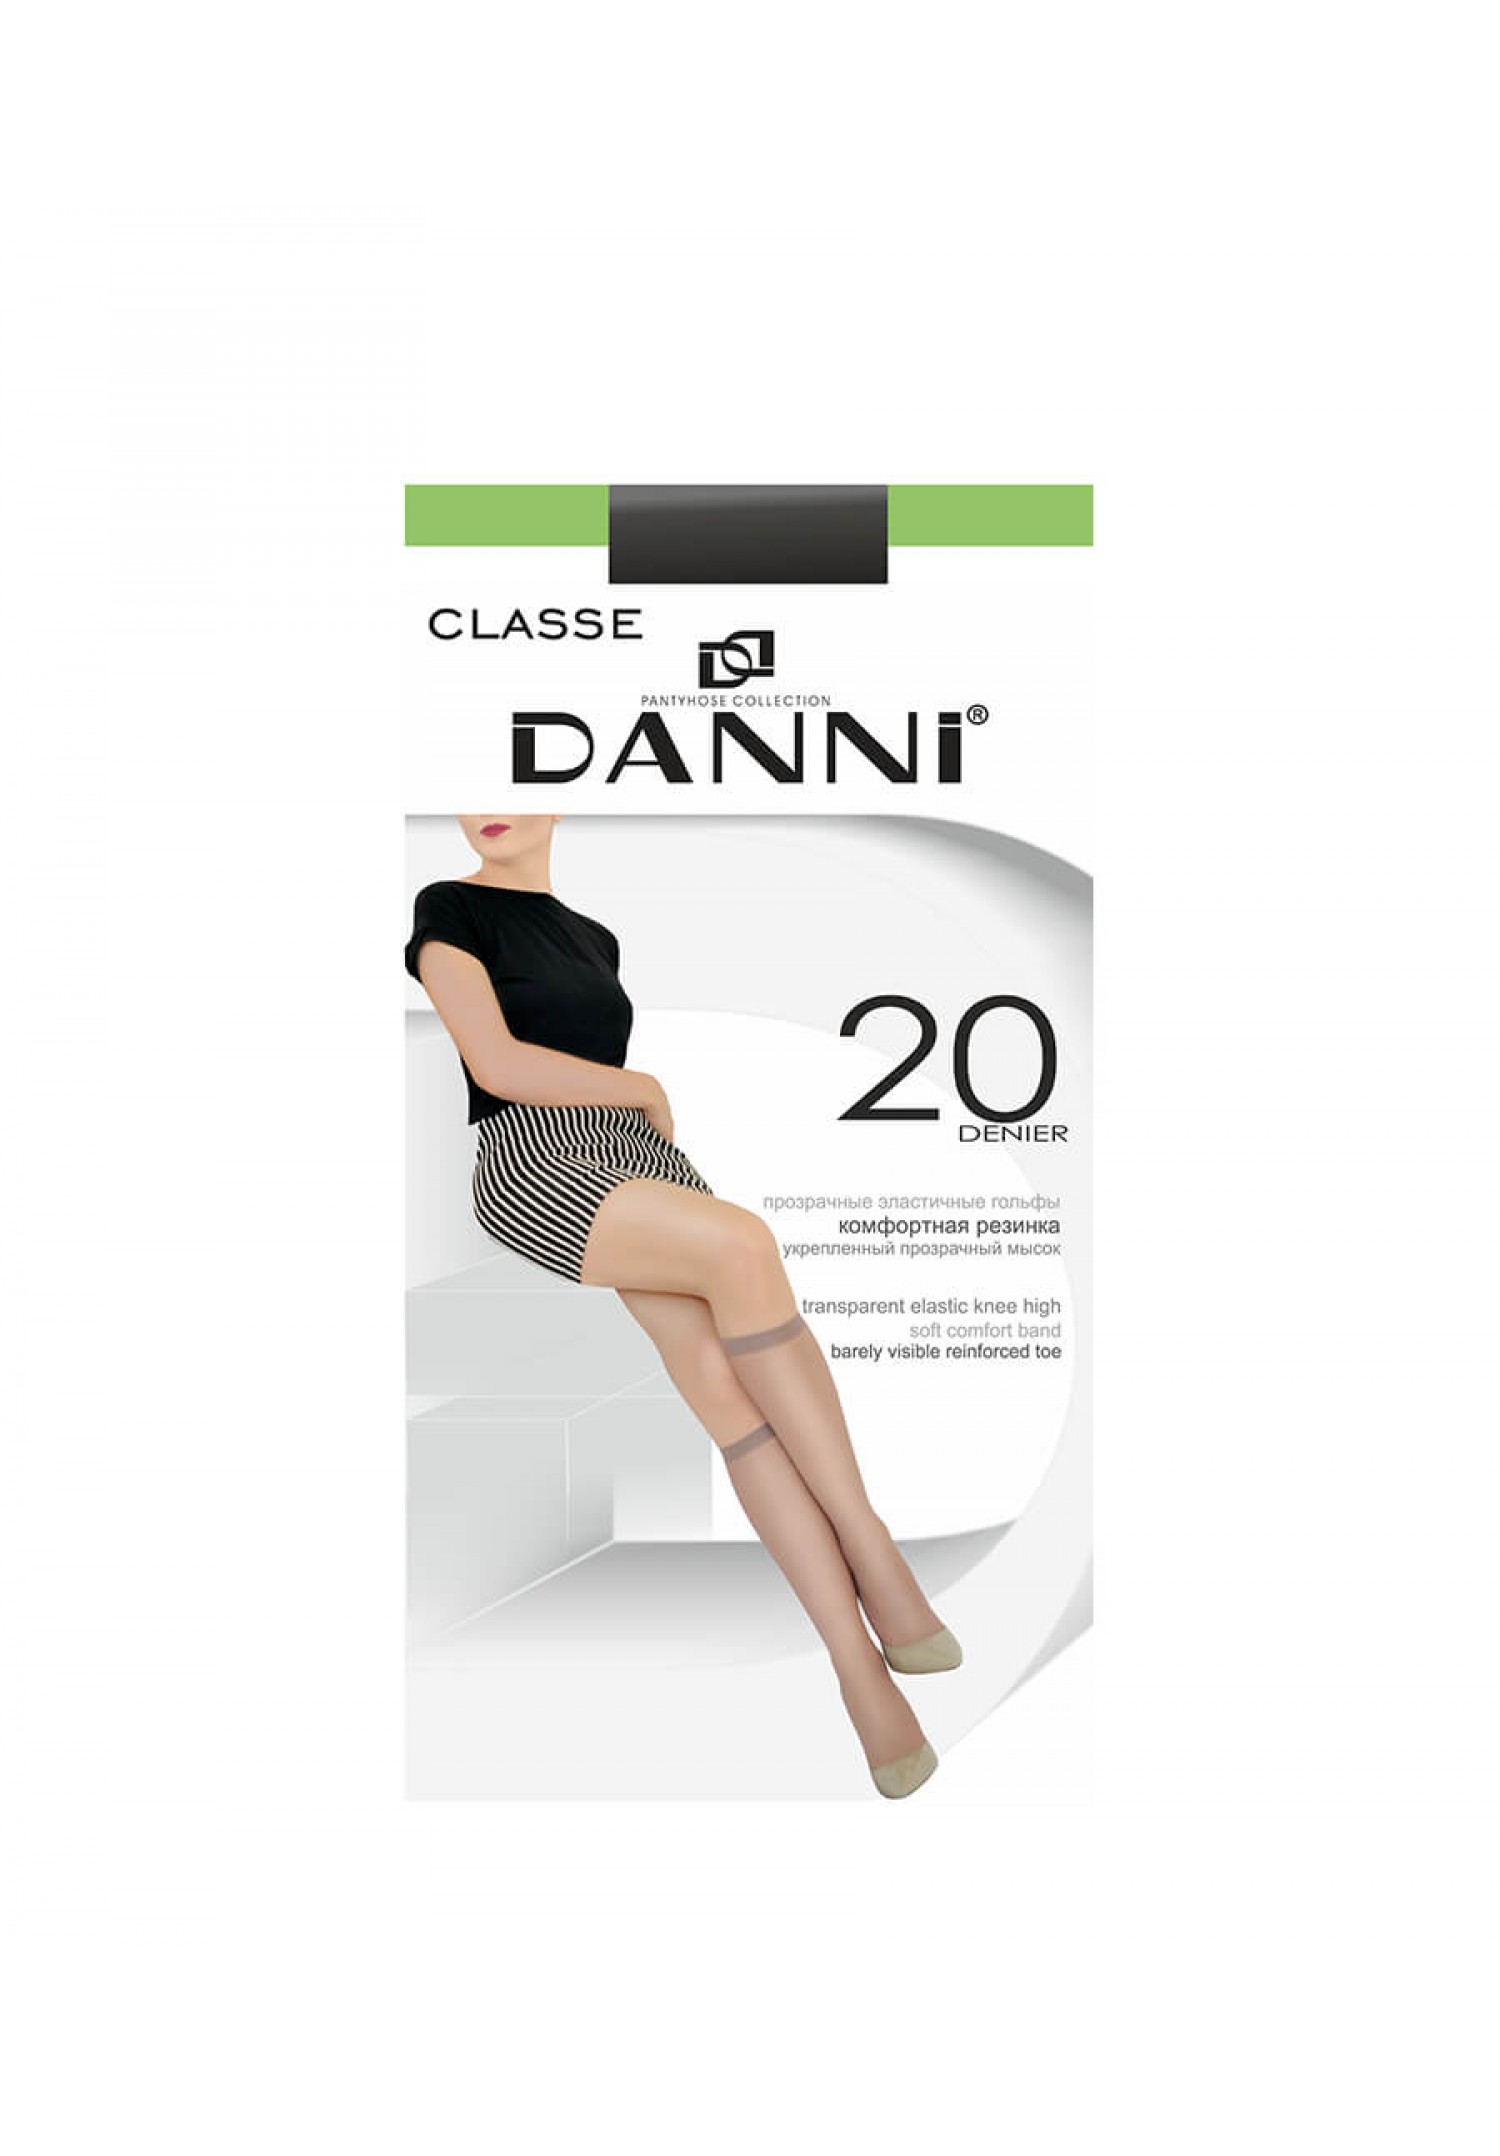 Danni Classe Knee-High 20 Den Կանացի կիսագուլպա